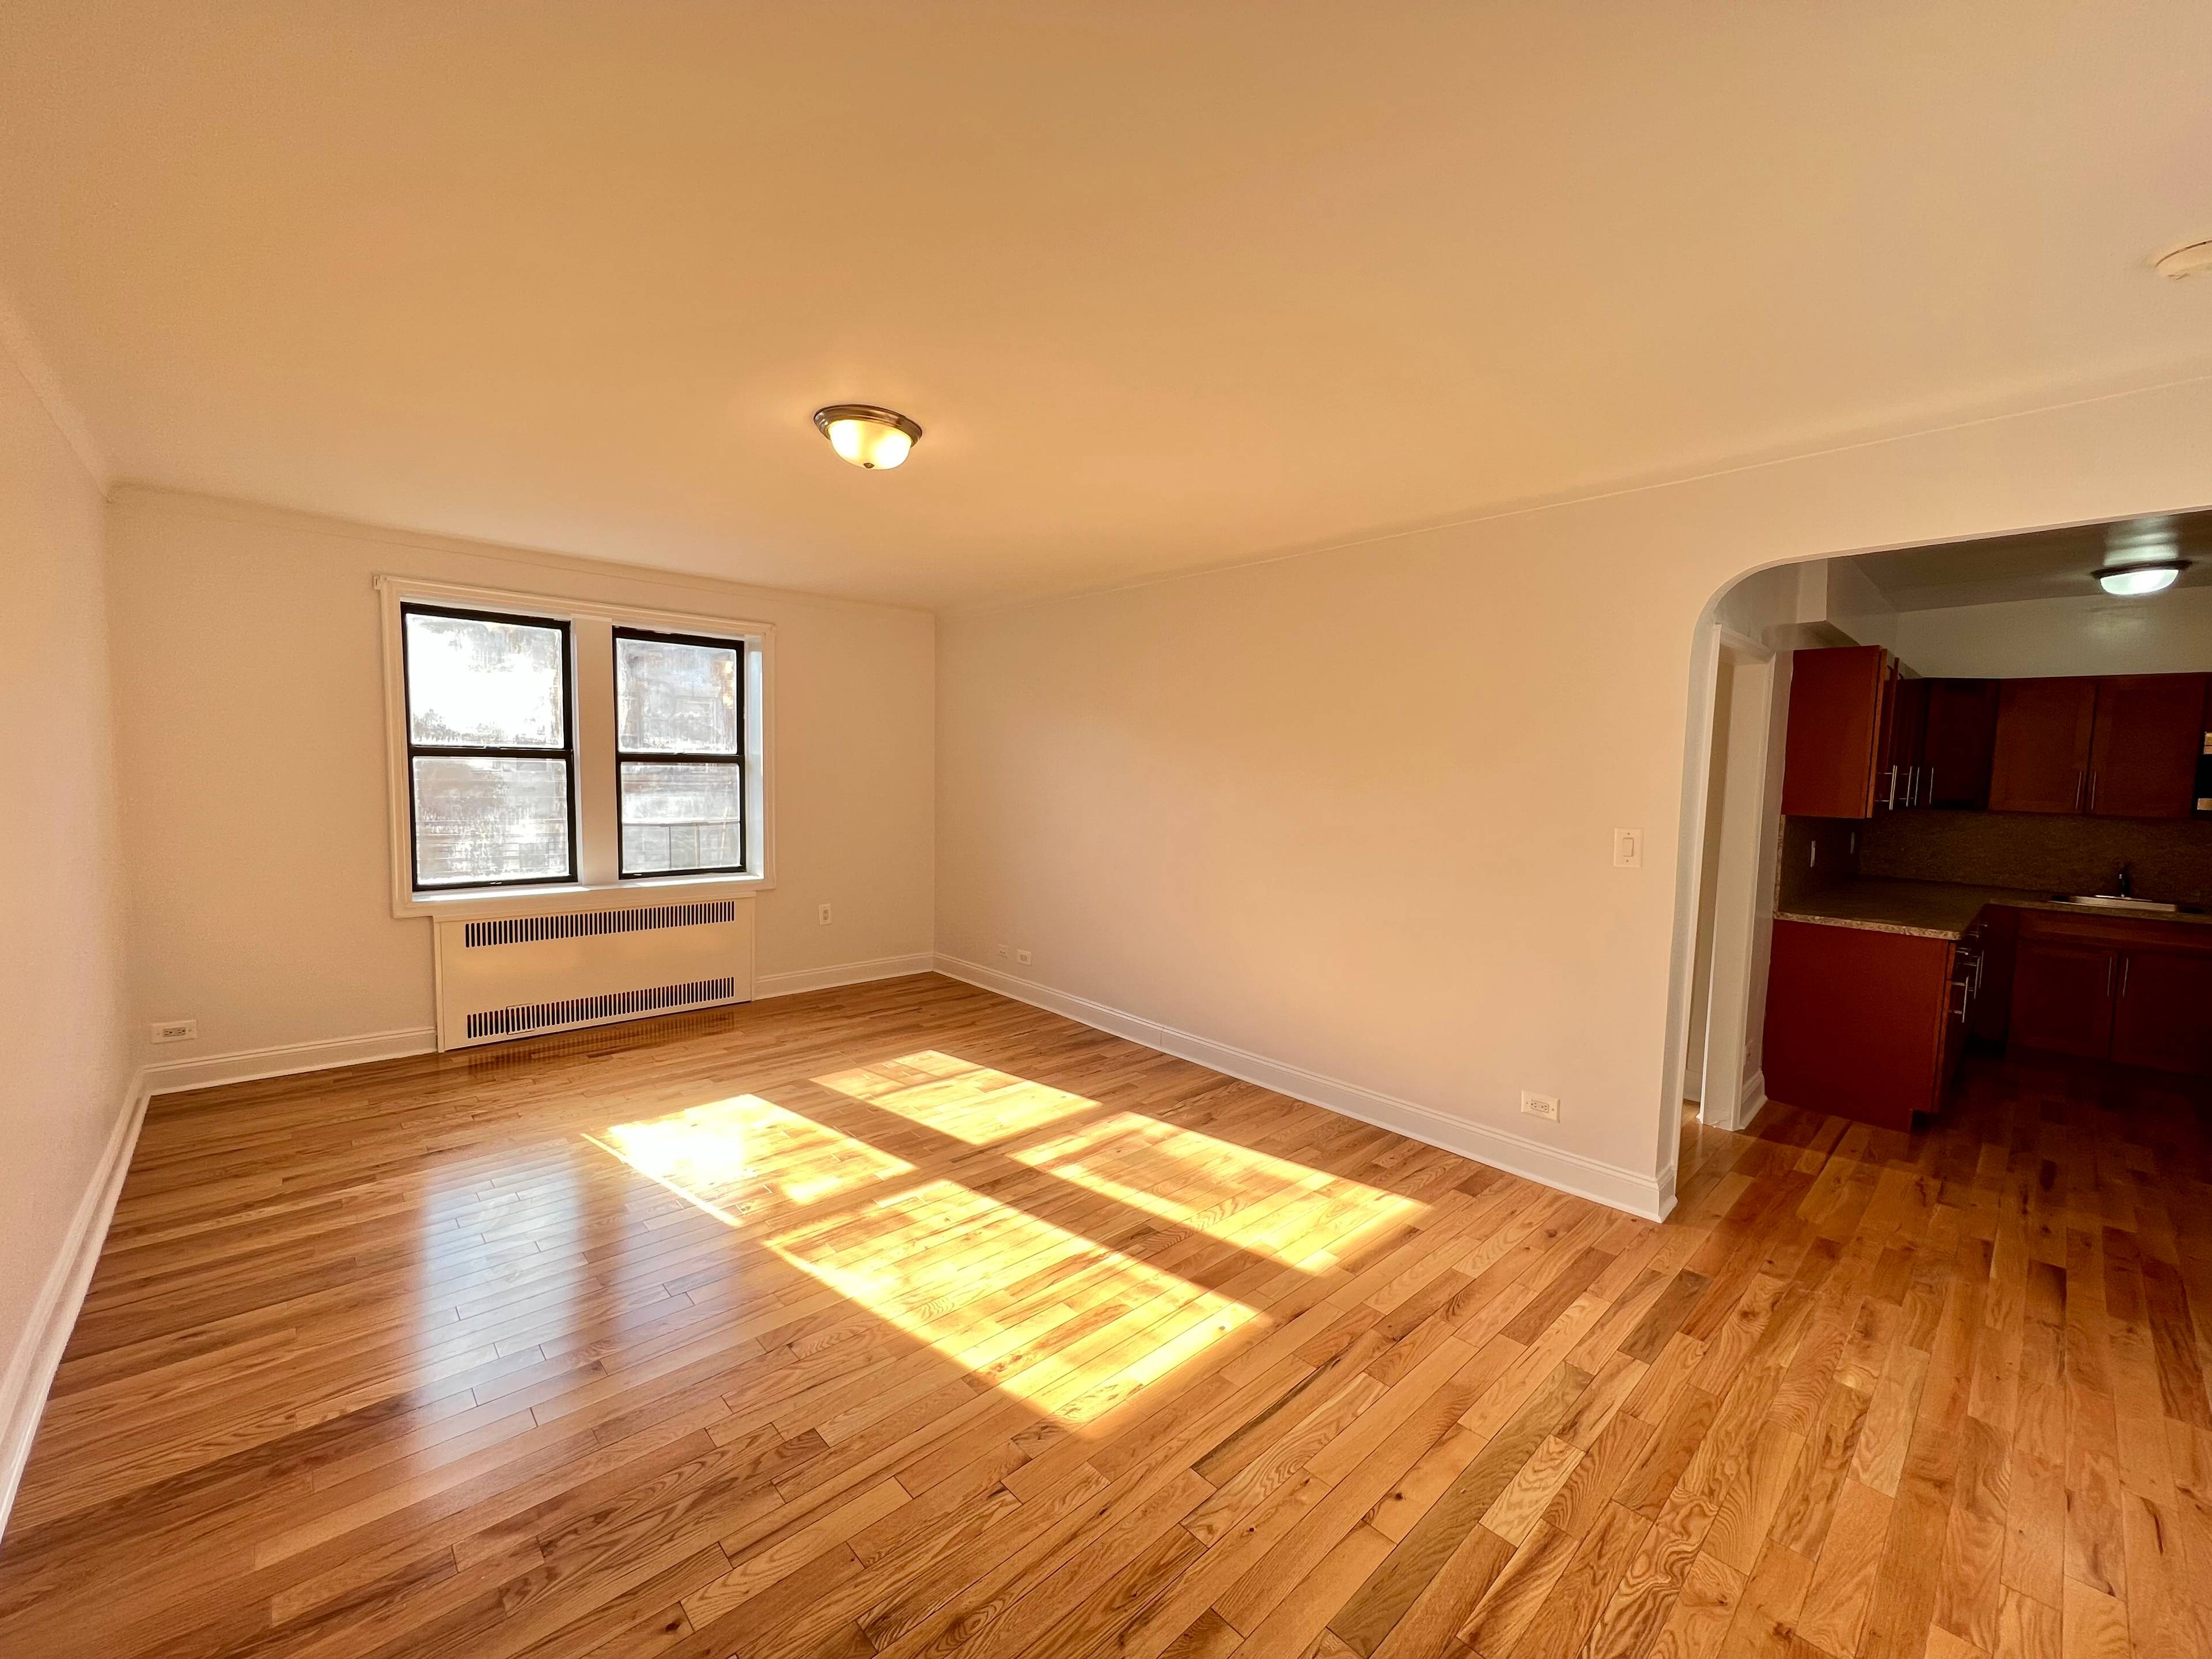 Elmhurst, Queens: Sun Blasted Studio Apartment for Rent in Elevator Building